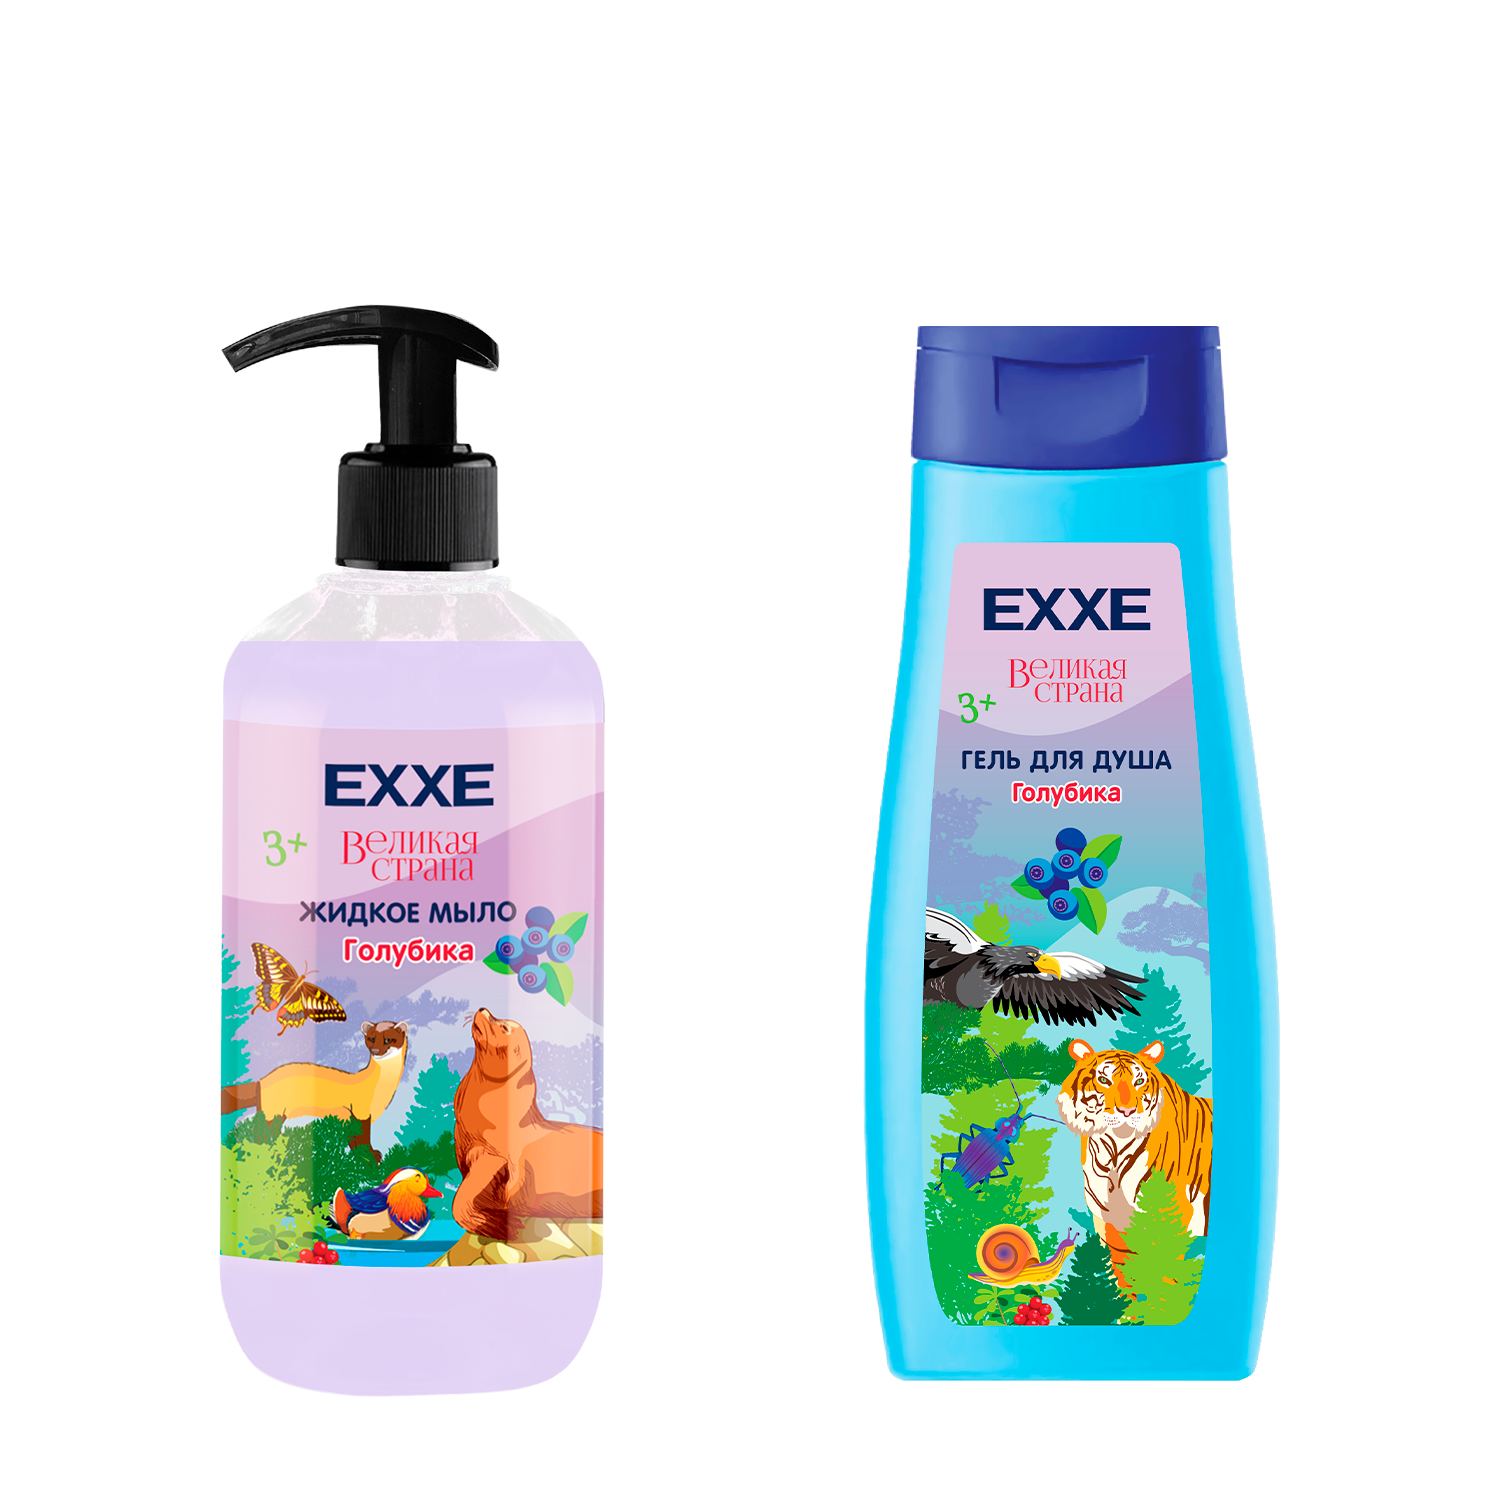 Набор детская серия EXXE Жидкое мыло + Гель для душа Голубика - фото 1